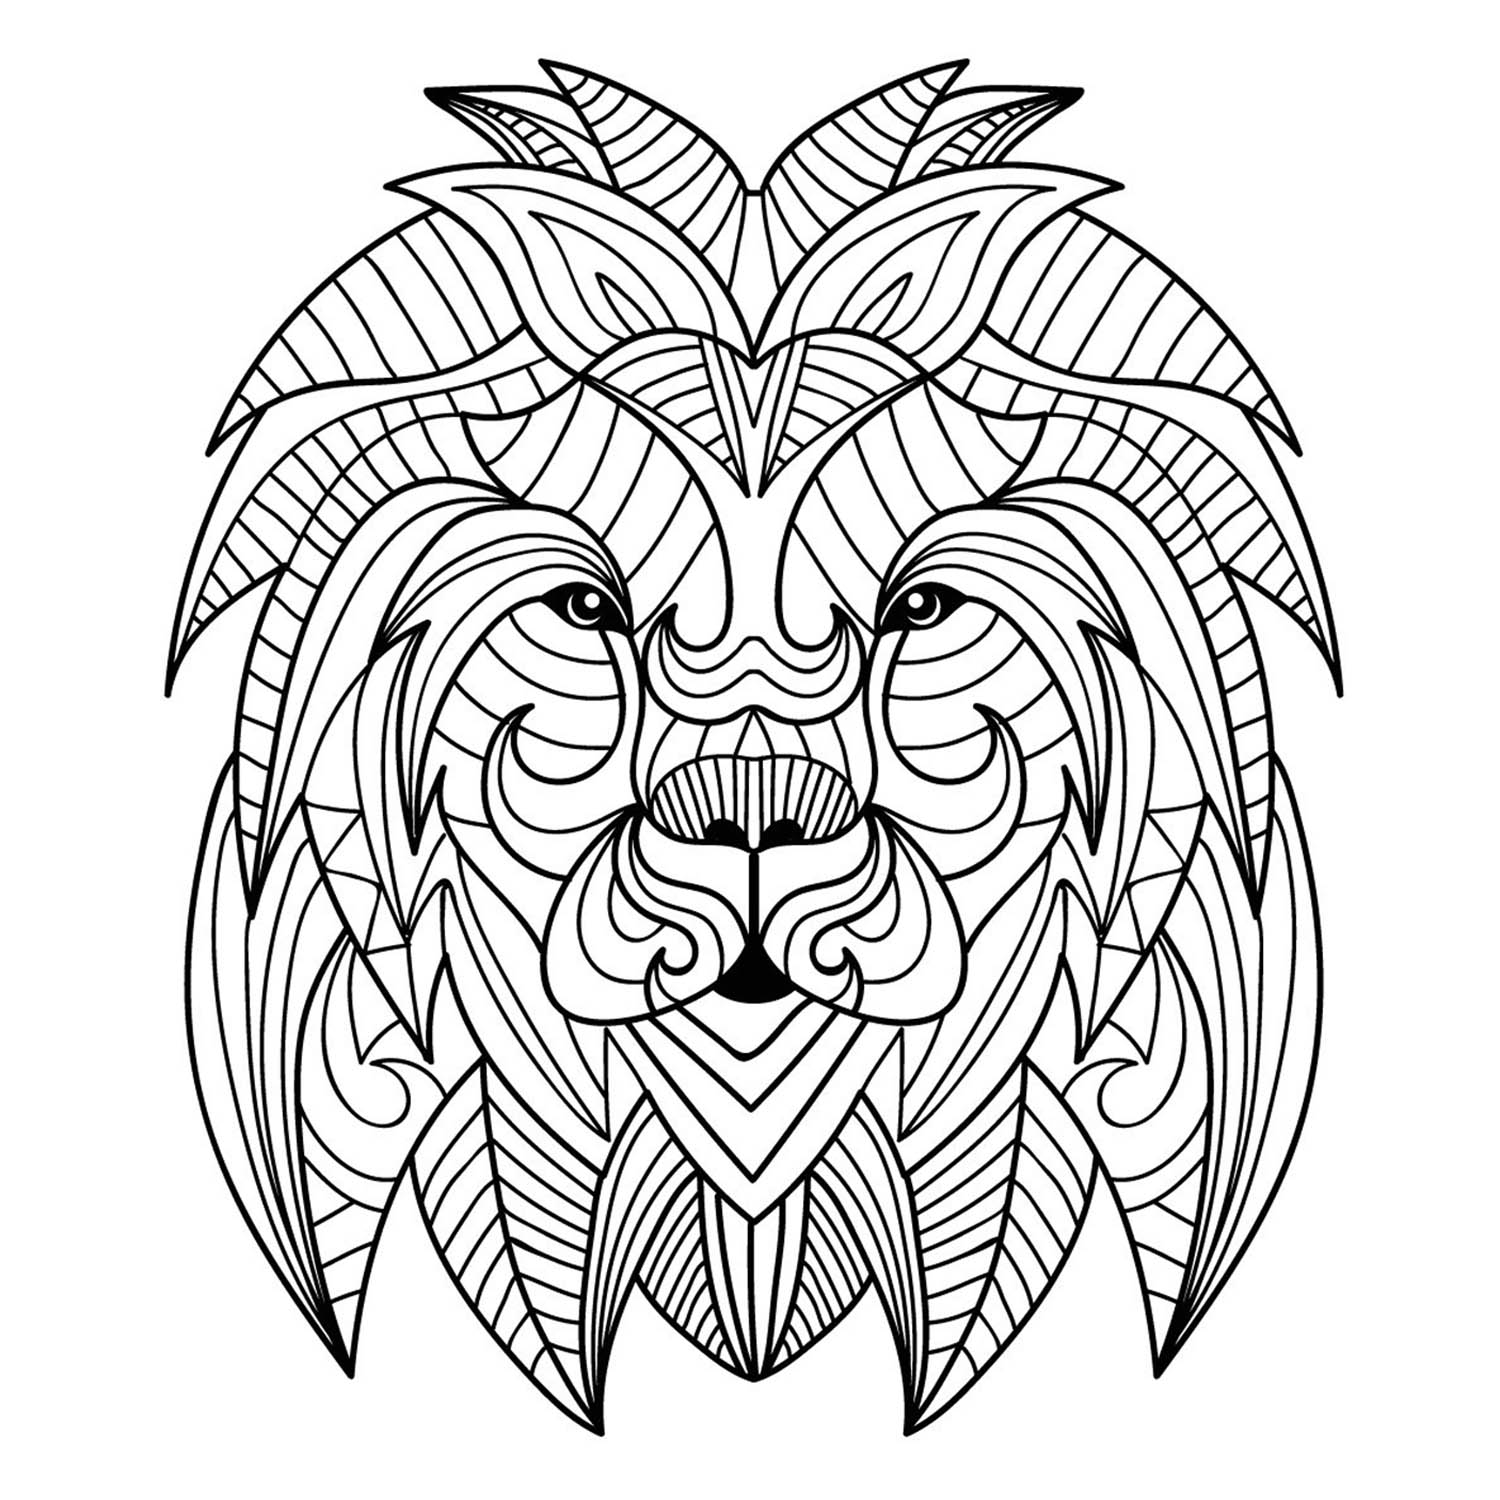 Una bonita cabeza de León en estilo mandala, sin fondo